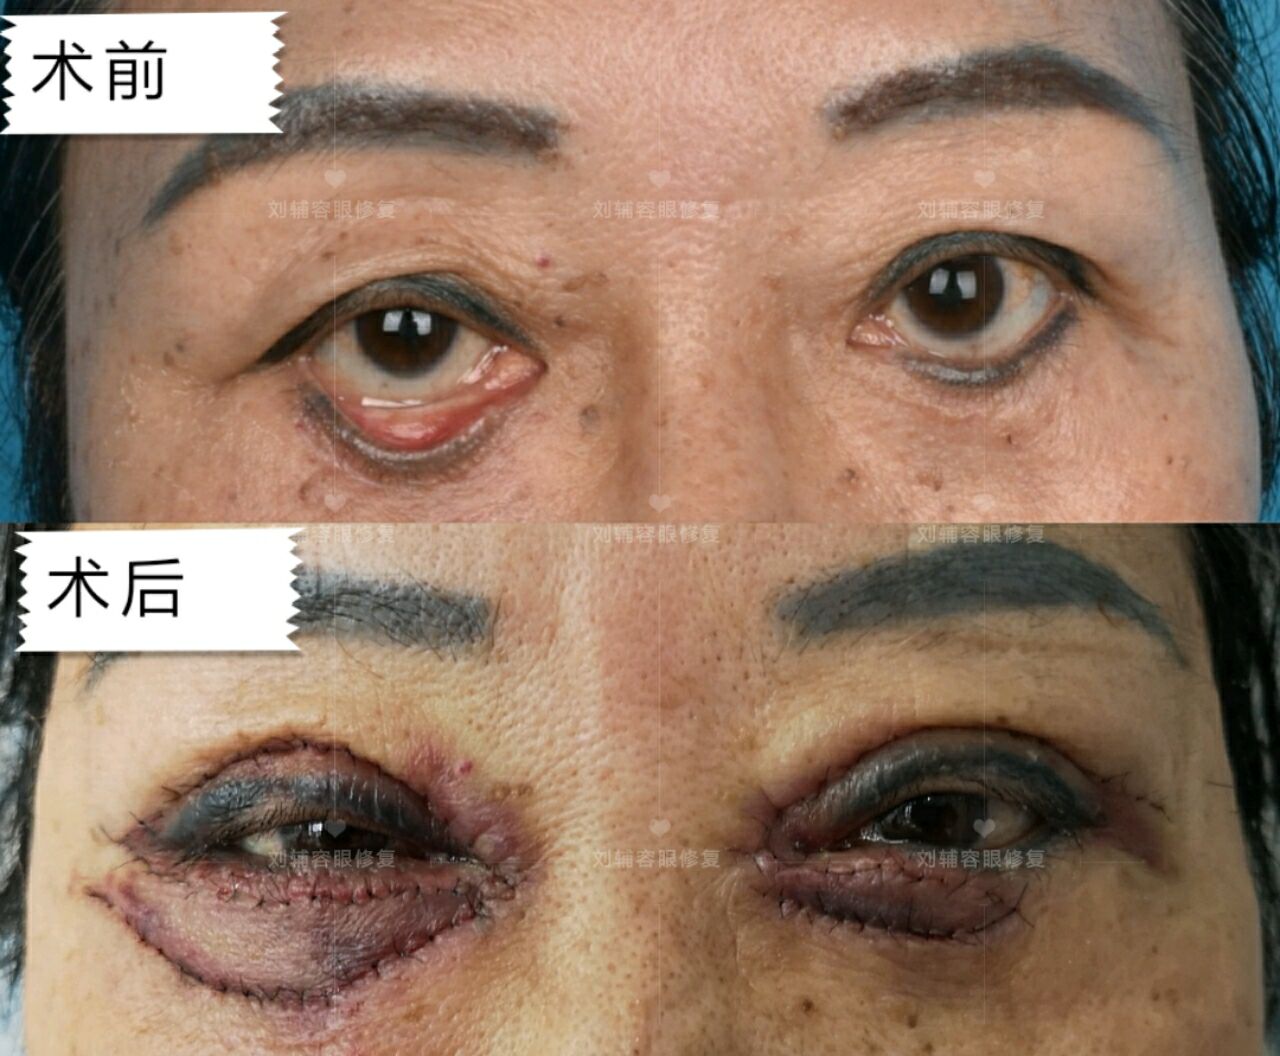 手术也不该被轻视 双眼眼袋去除与中面部线雕术后半年,导致双下睑外翻